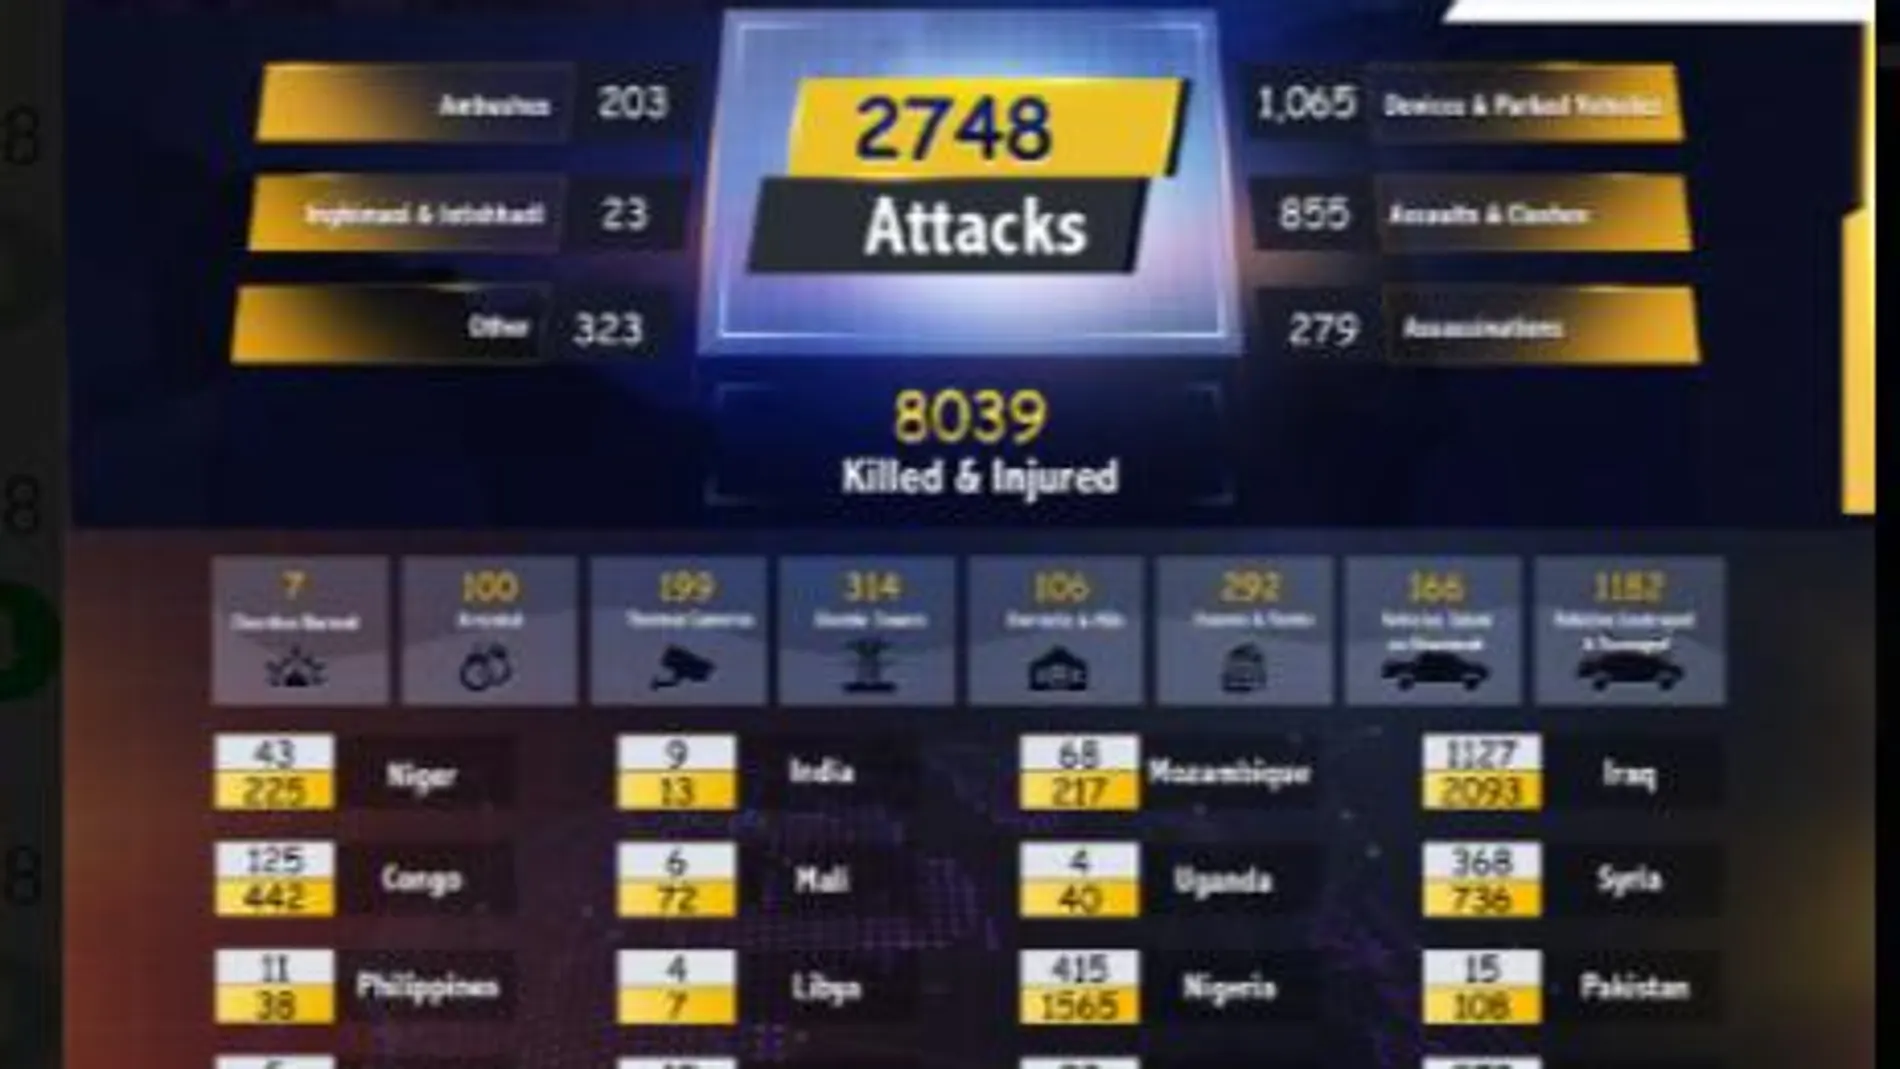 Cuadro estadístico de atentados cometidos por el Estado Islámico, publicado por la propia banda yihadista